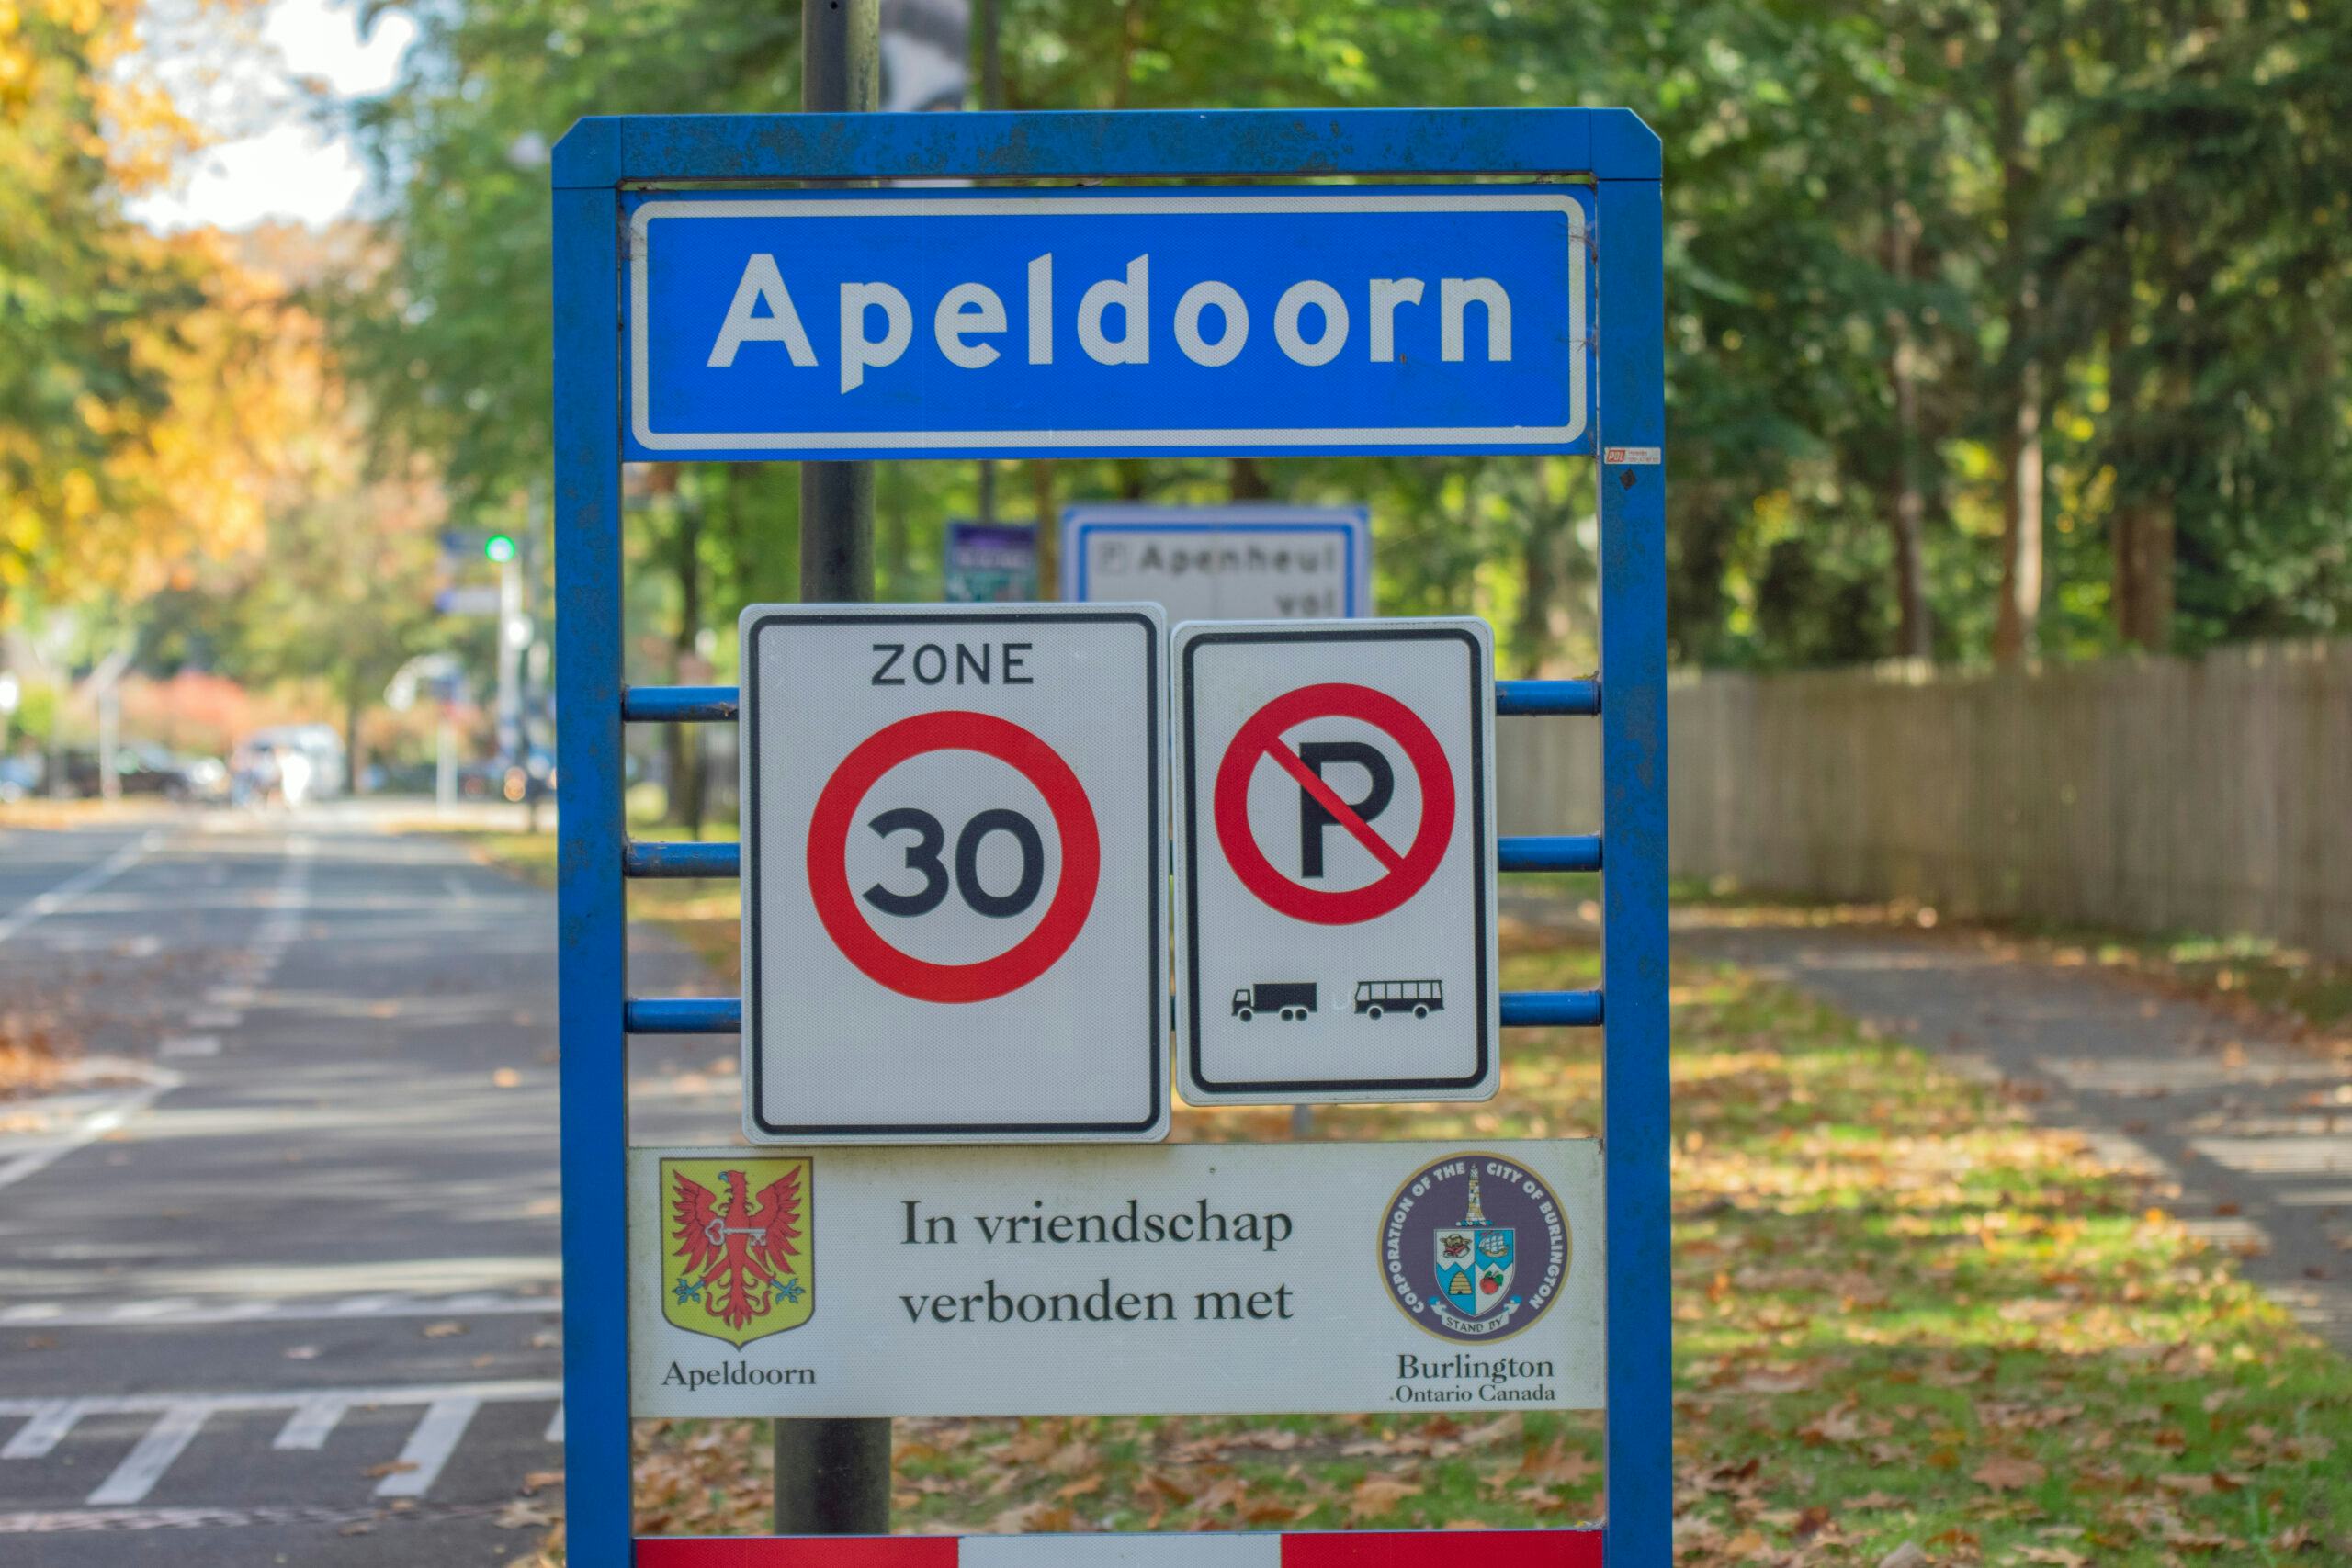 Gratis 100 hybride warmtepompen voor minima in Apeldoorn